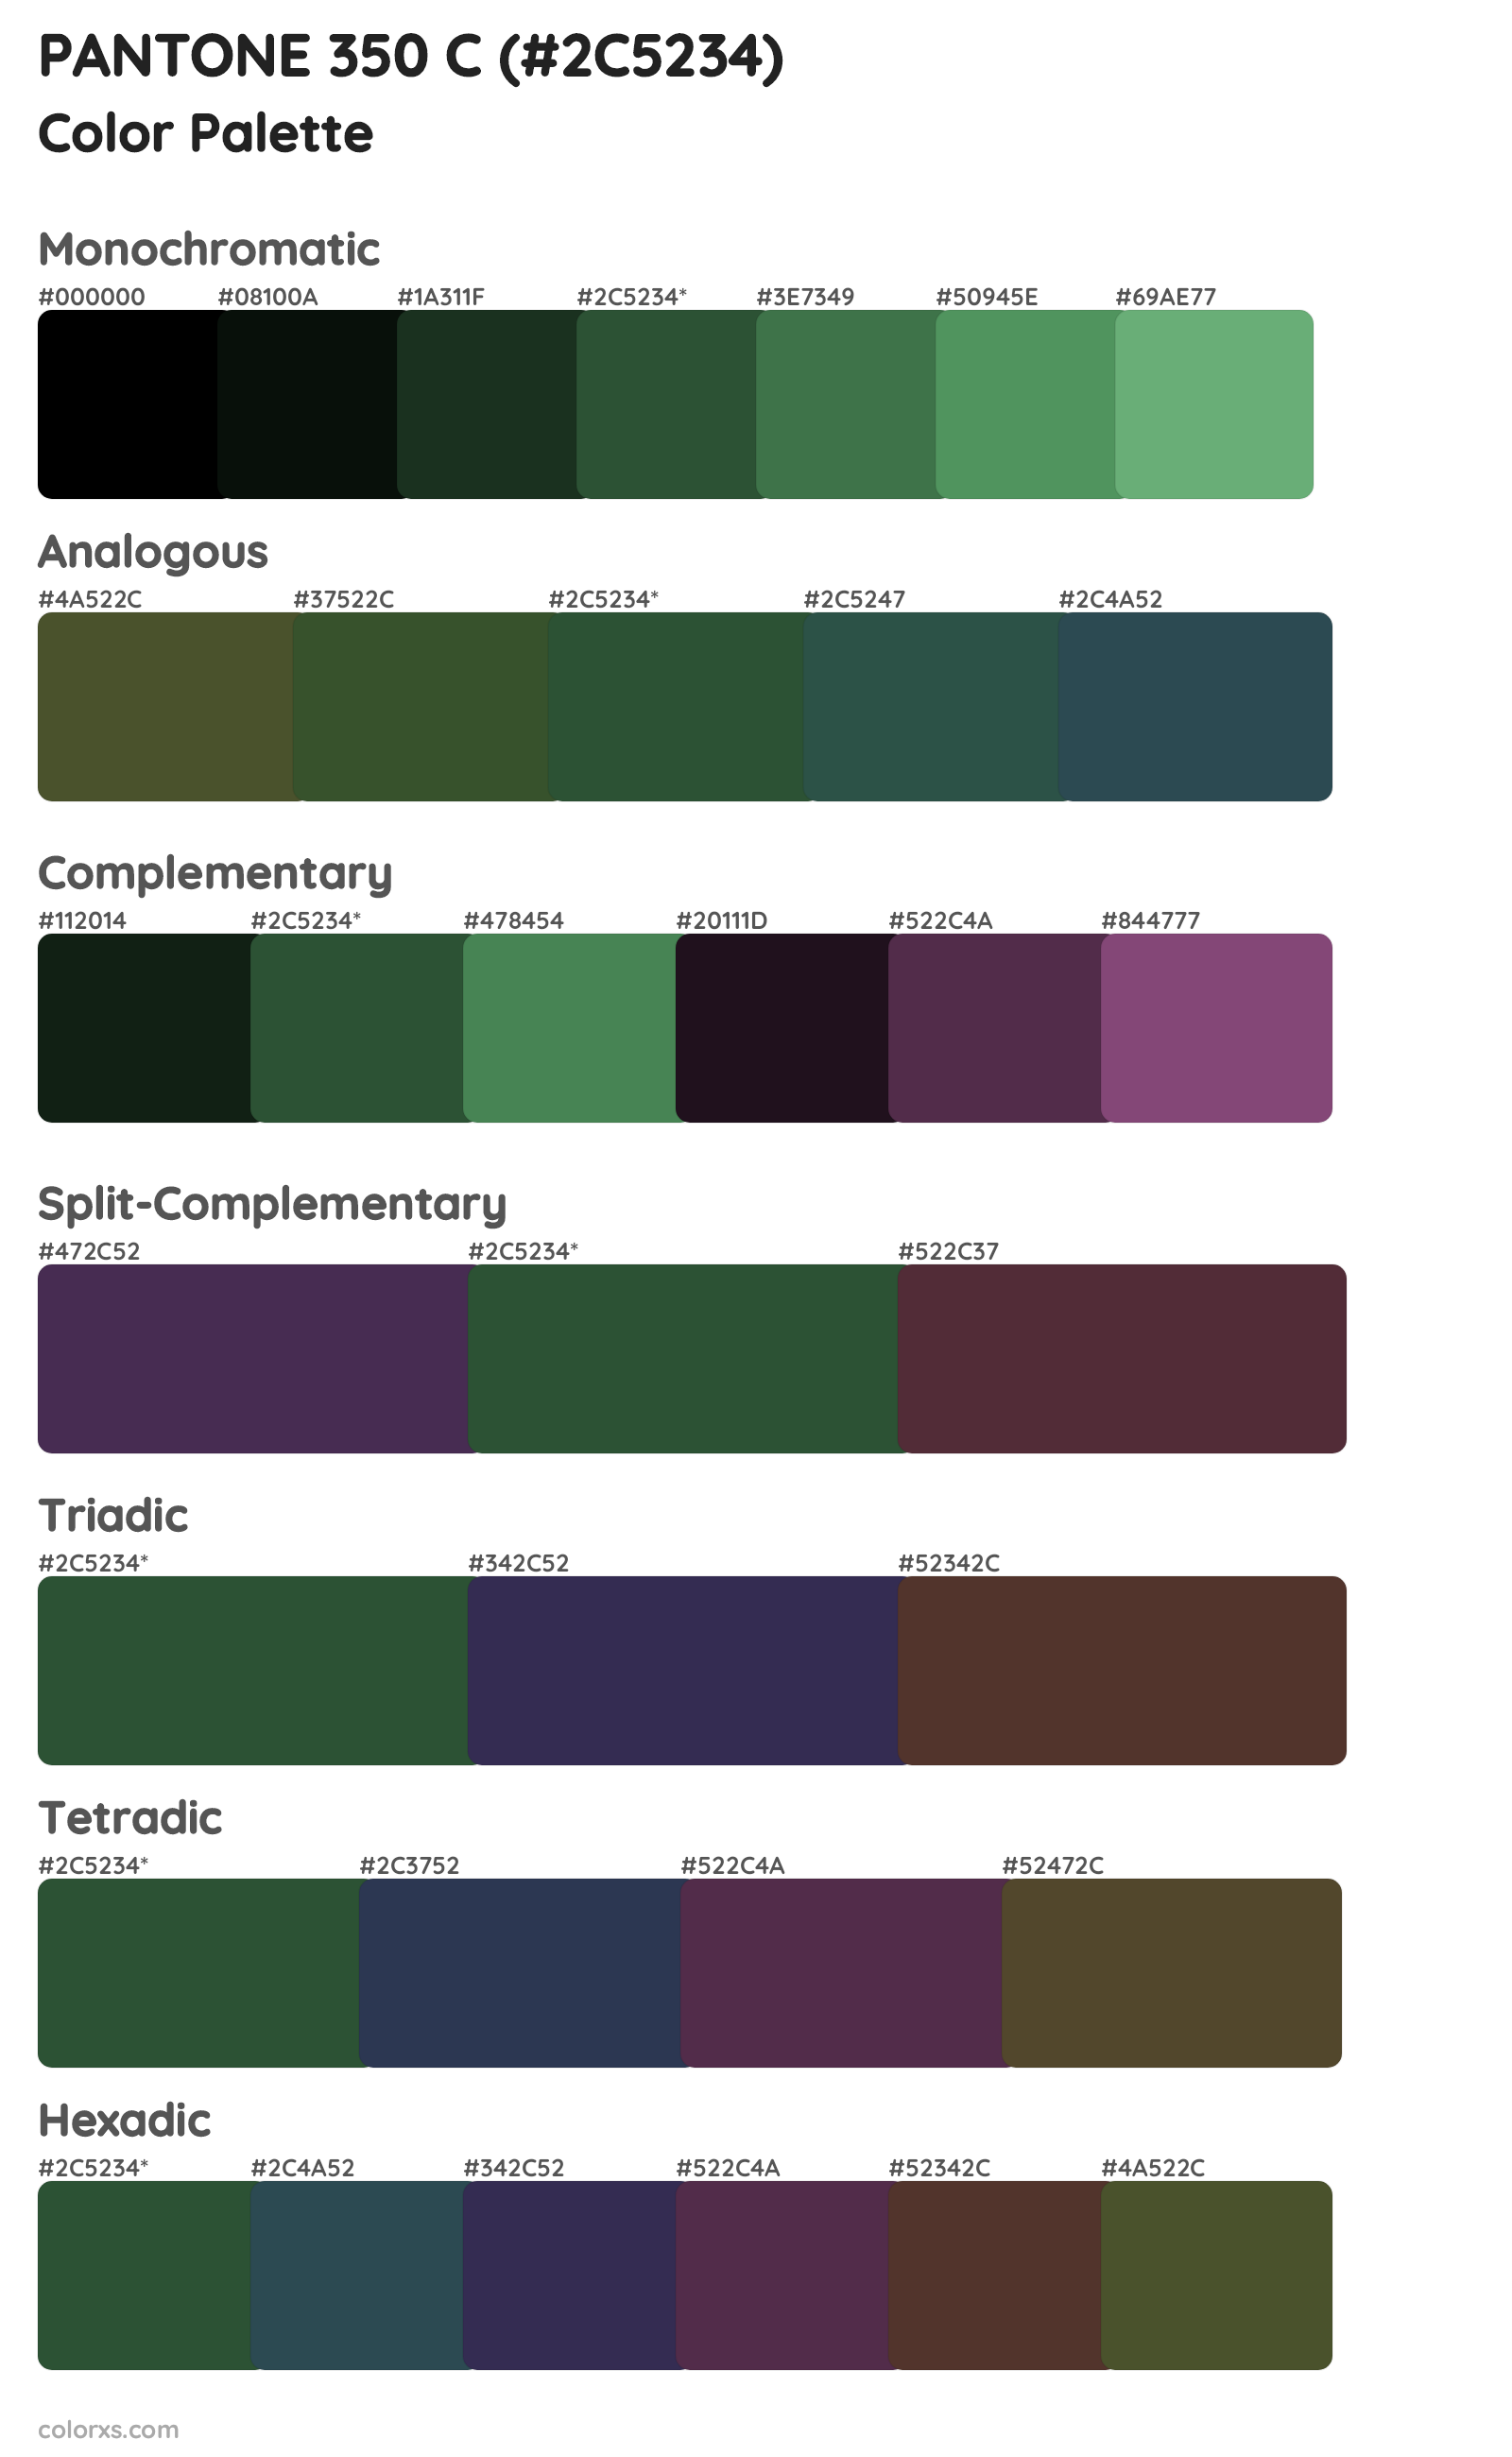 PANTONE 350 C Color Scheme Palettes